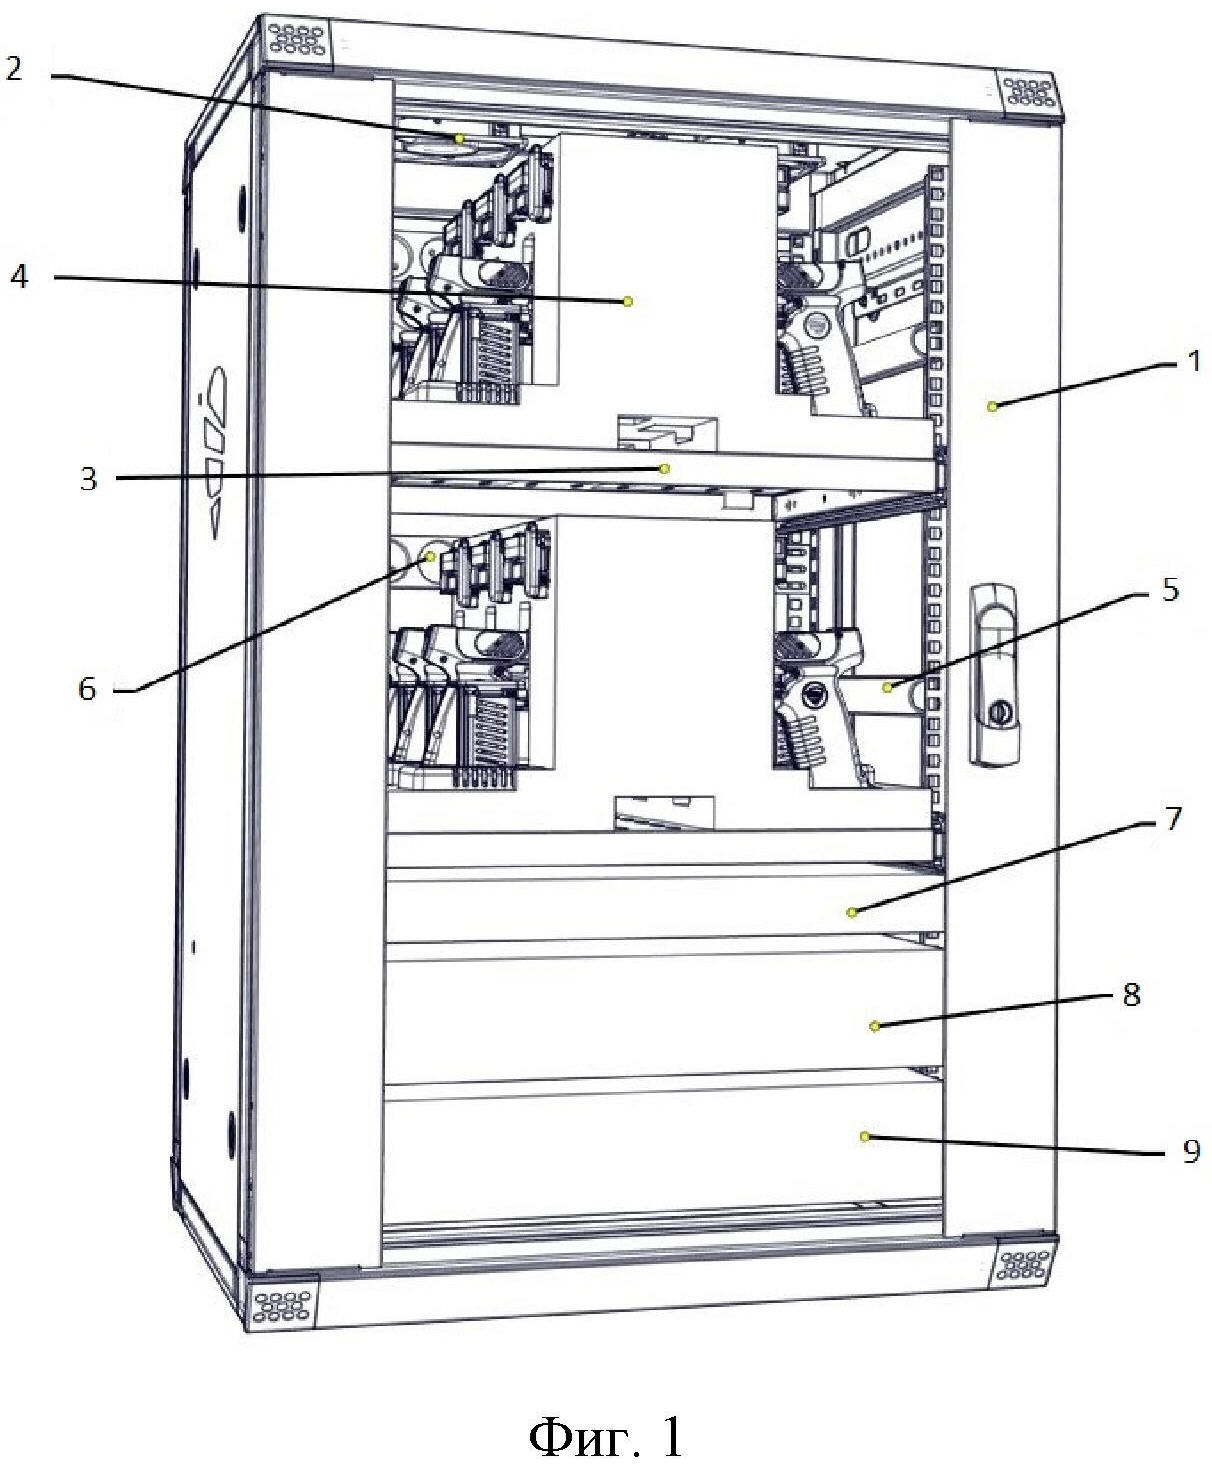 Шкаф для зарядки и хранения многозарядного дистанционно-контактного электрошокового устройства и аксессуаров к нему